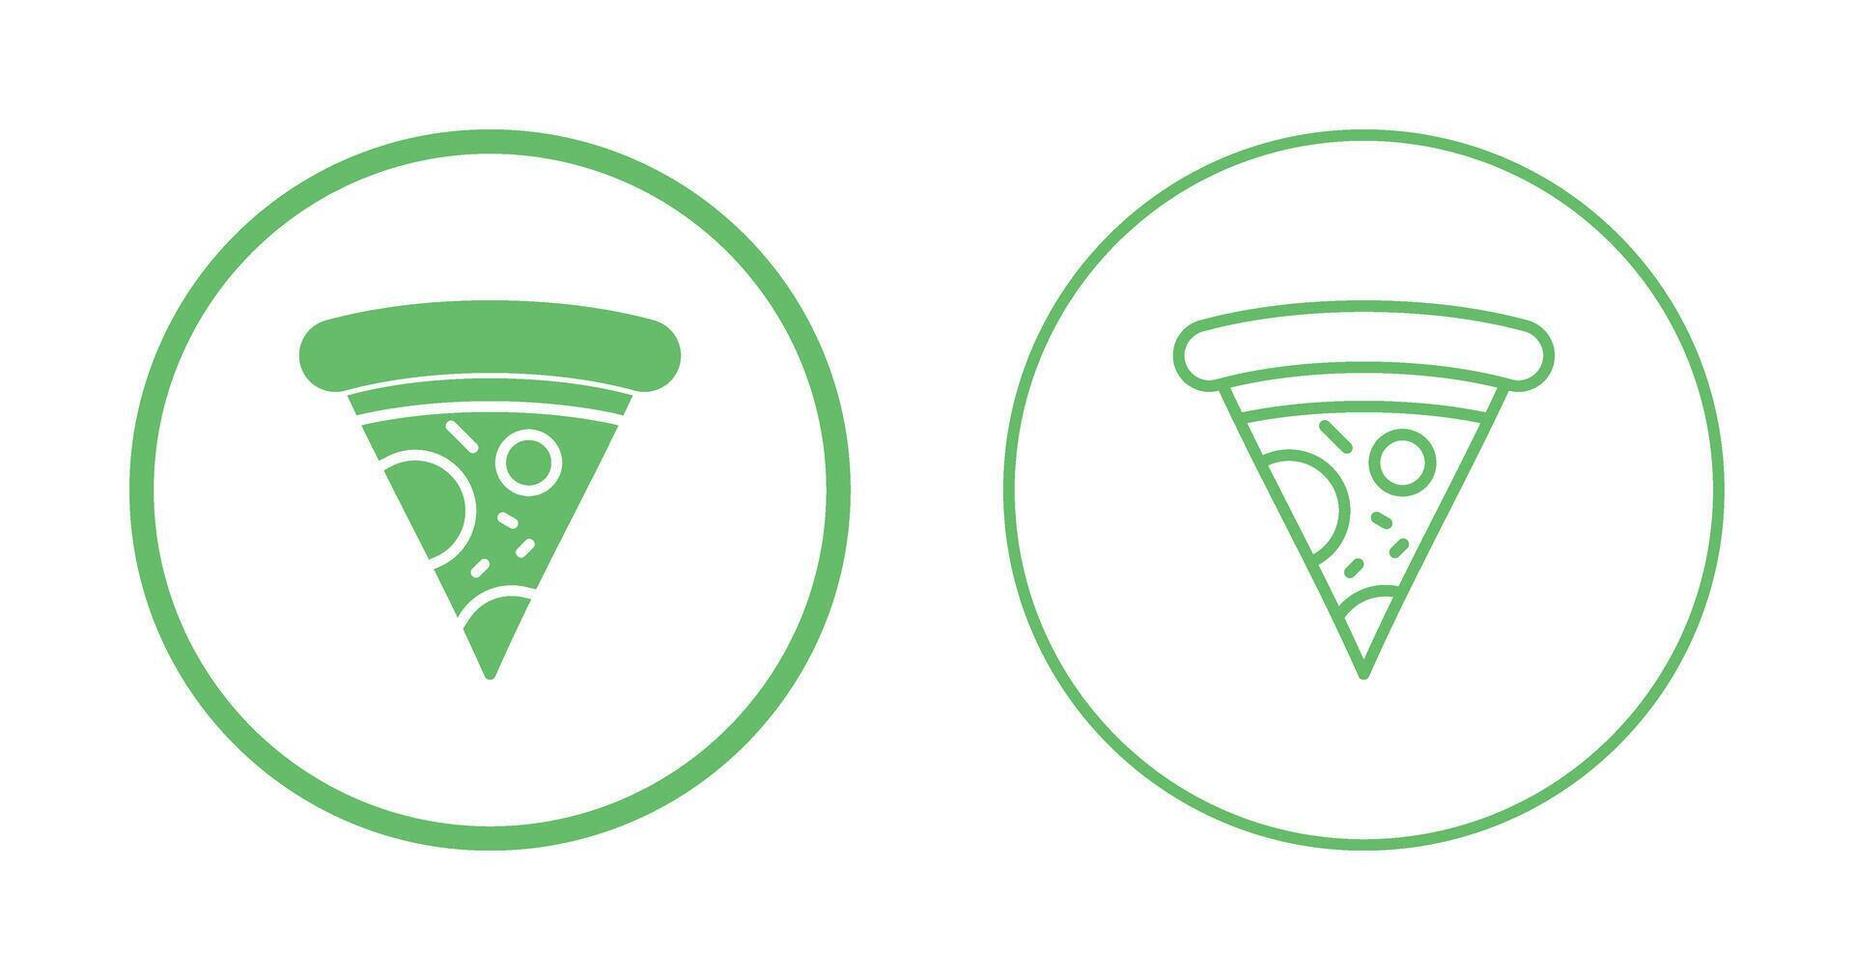 pizza vektor ikon